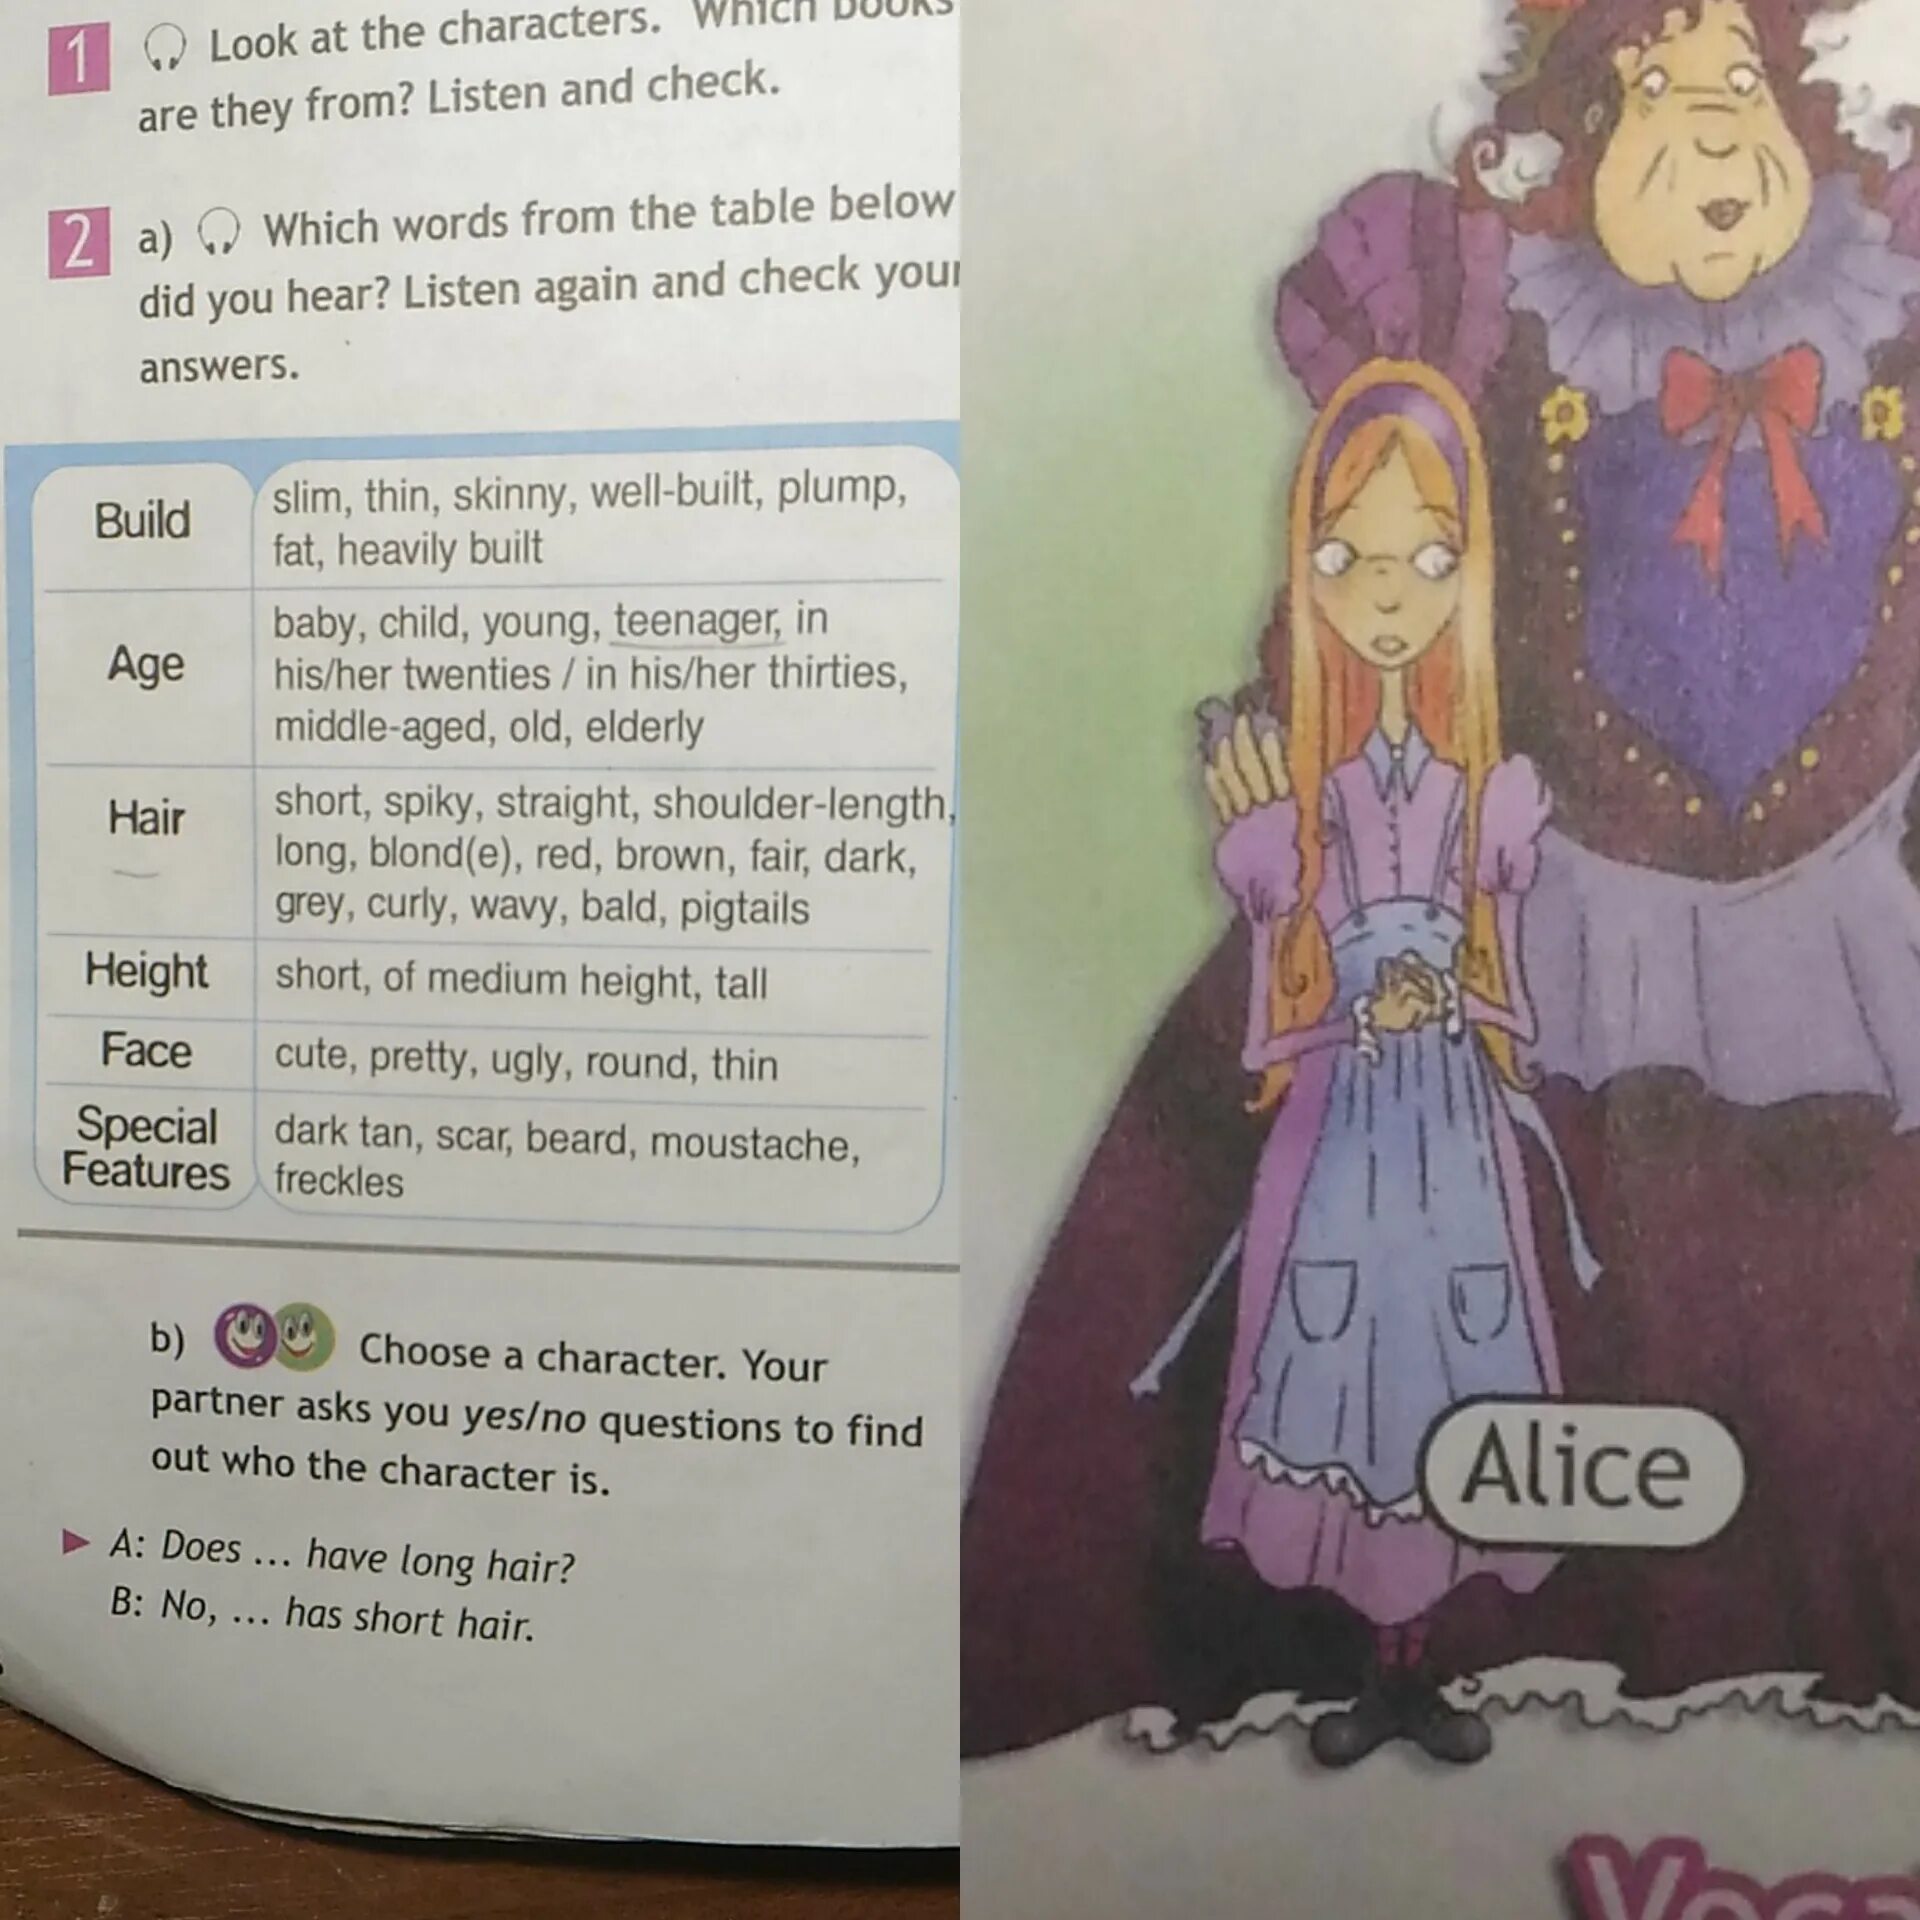 Какими словами можно охарактеризовать алису. Описать персонажа на английском языке. Алиса в стране чудес описание Алисы на английском. Алиса в стране чудес описание Алисы внешность. Алиса в стране чудес описание внешности.